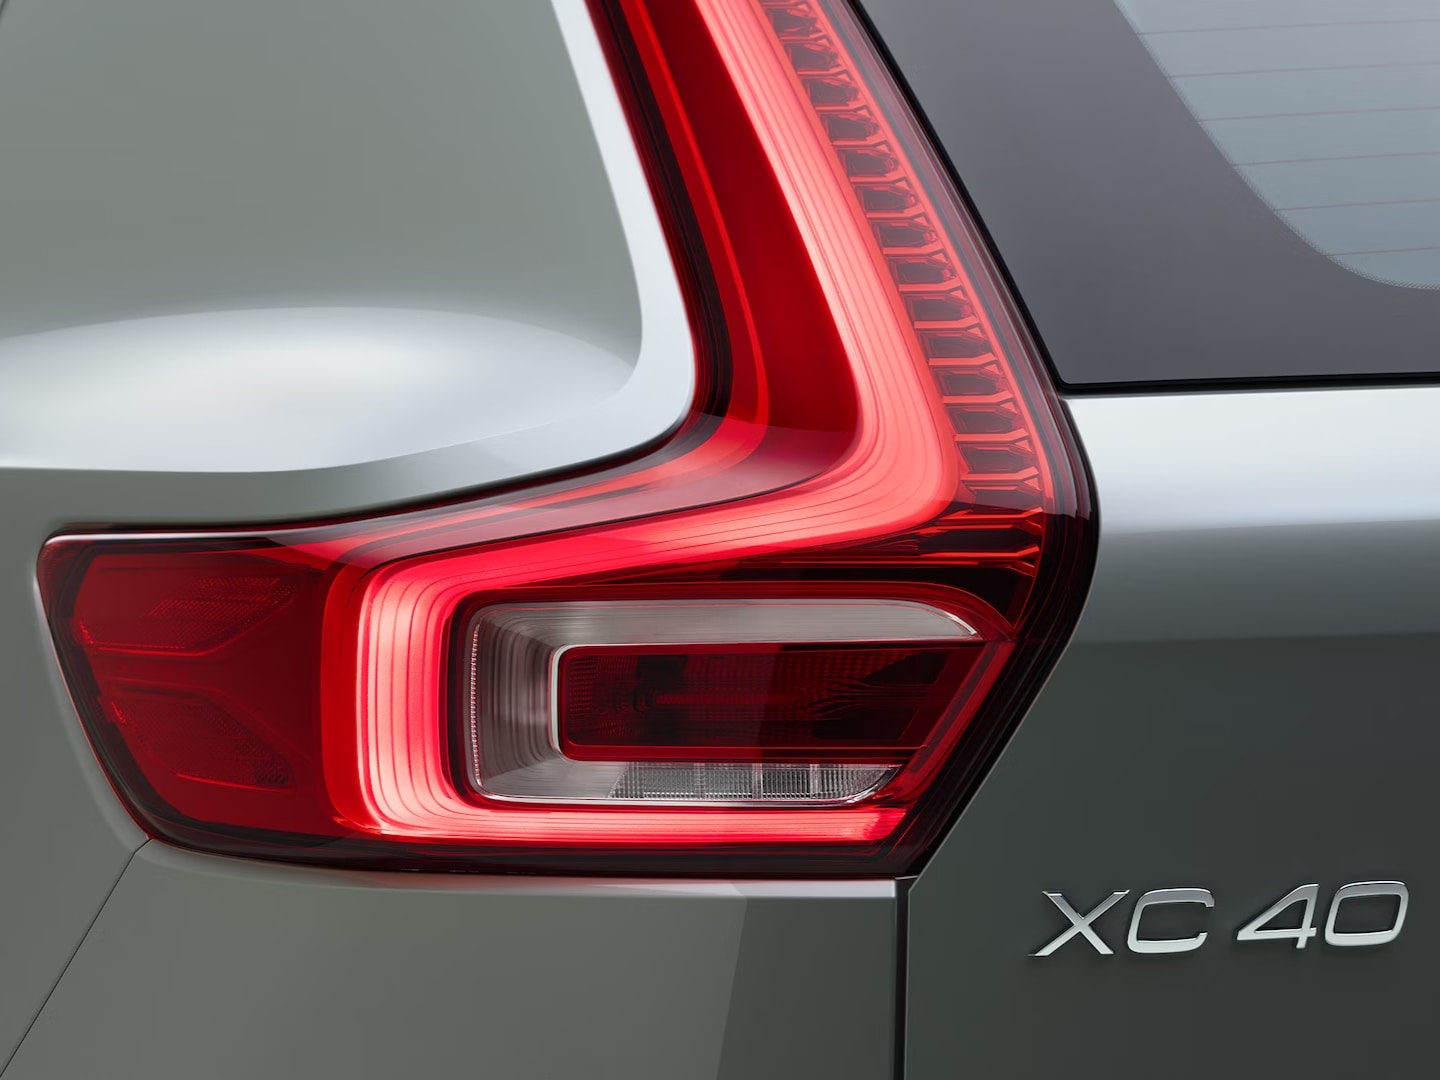 Feux arrière à LED du SUV Volvo XC40 micro-hybride pour une meilleure visibilité.